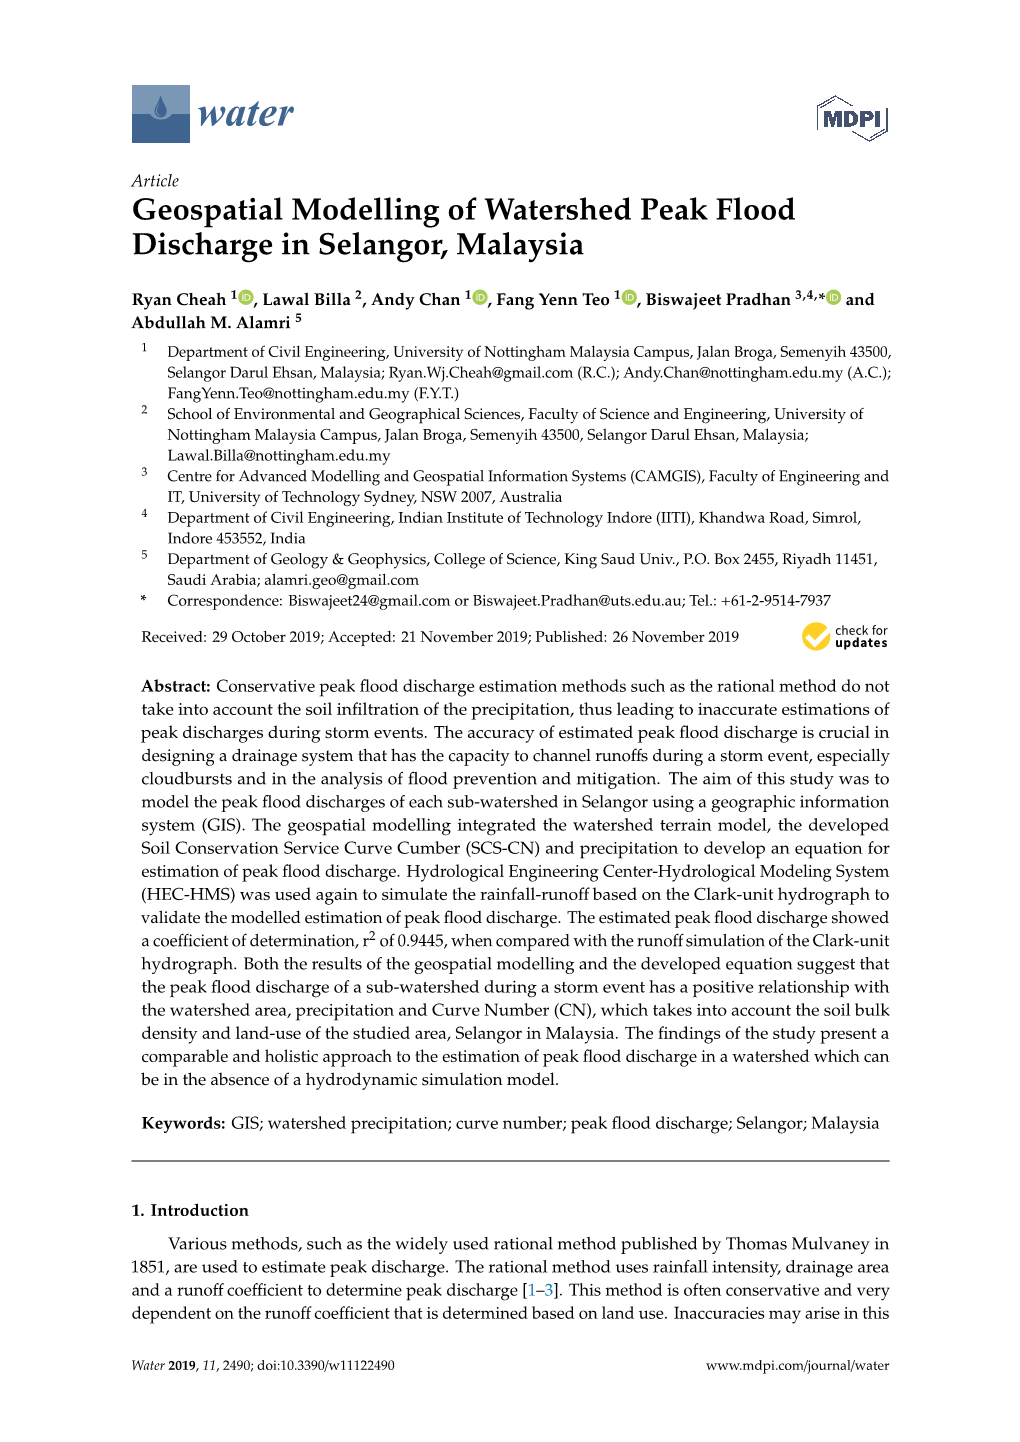 Geospatial Modelling of Watershed Peak Flood Discharge in Selangor, Malaysia